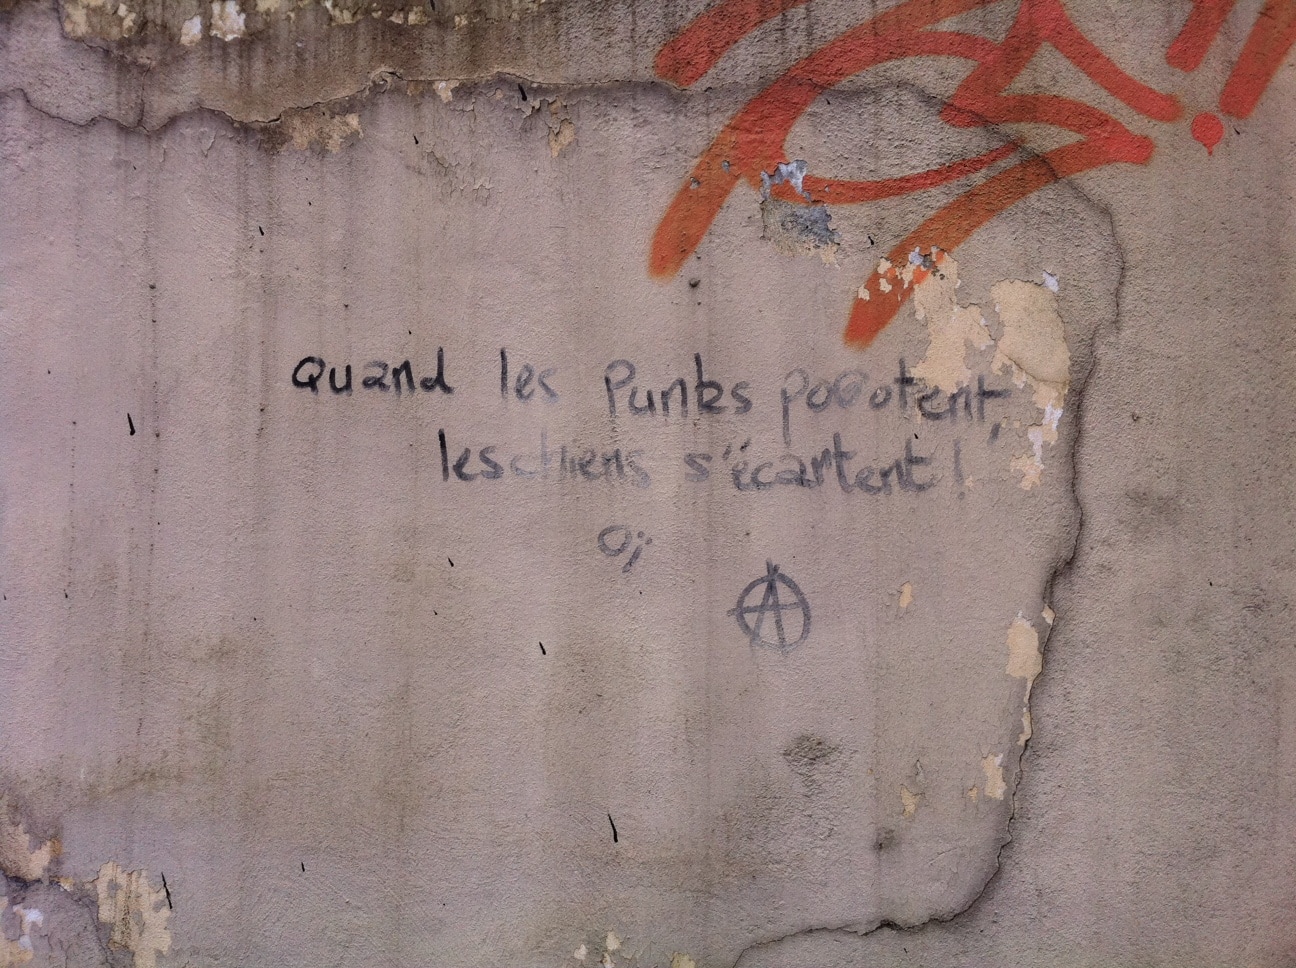 Graff à Oullins : Quand les punks pogotent les ciens s'écartent - Oï".